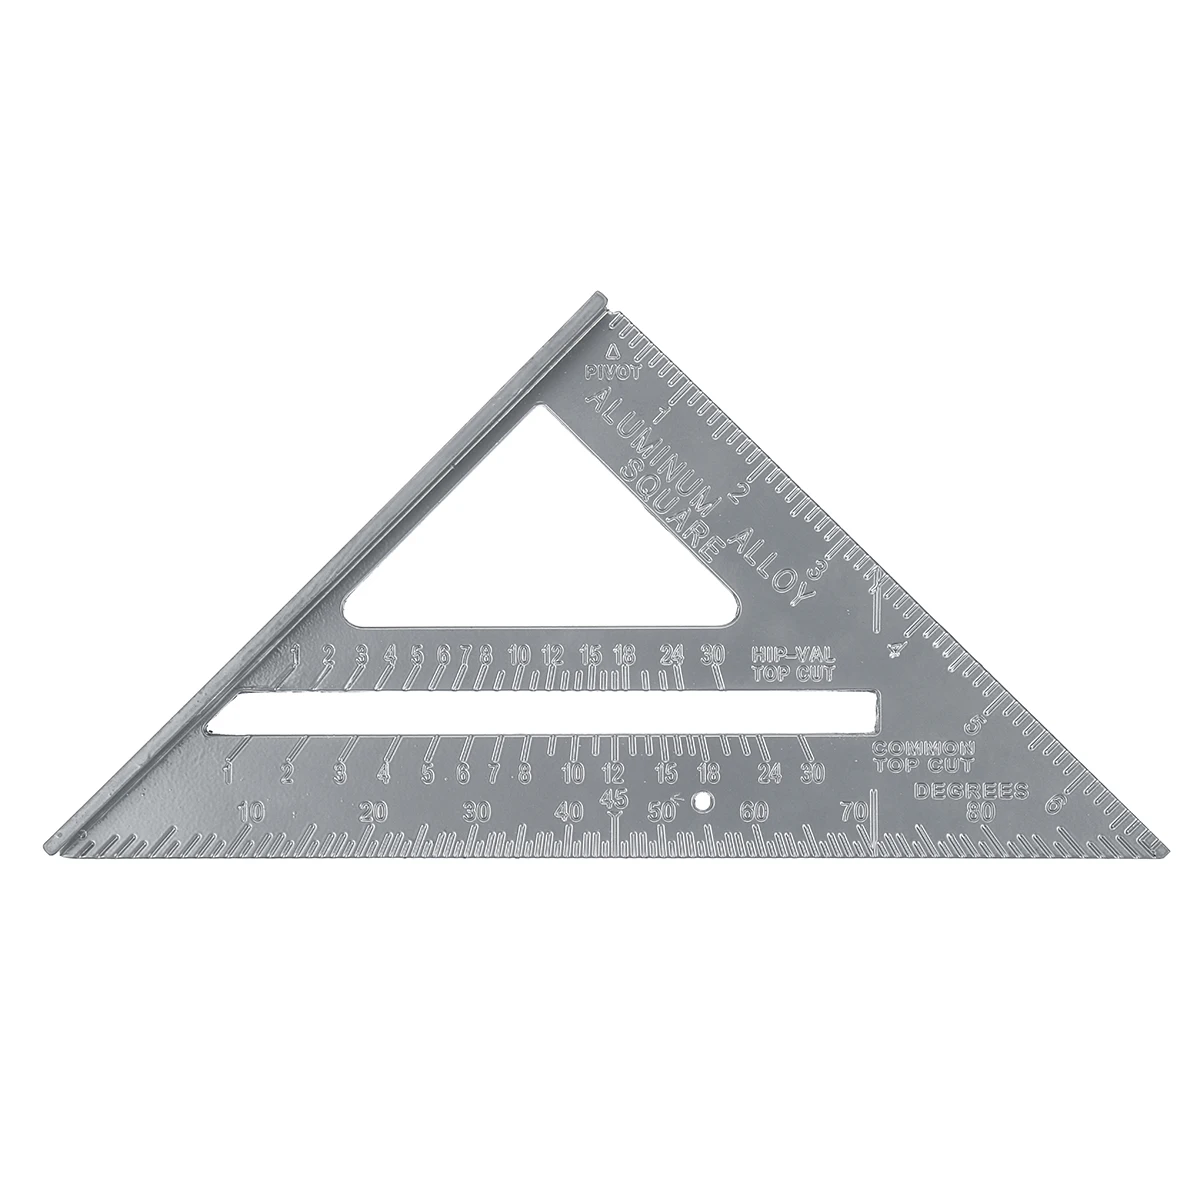 ZEAST 7 дюймов измерительная линейка из алюминиевого сплава скорость квадратная кровельная треугольная угломер Trammel измерительные инструменты